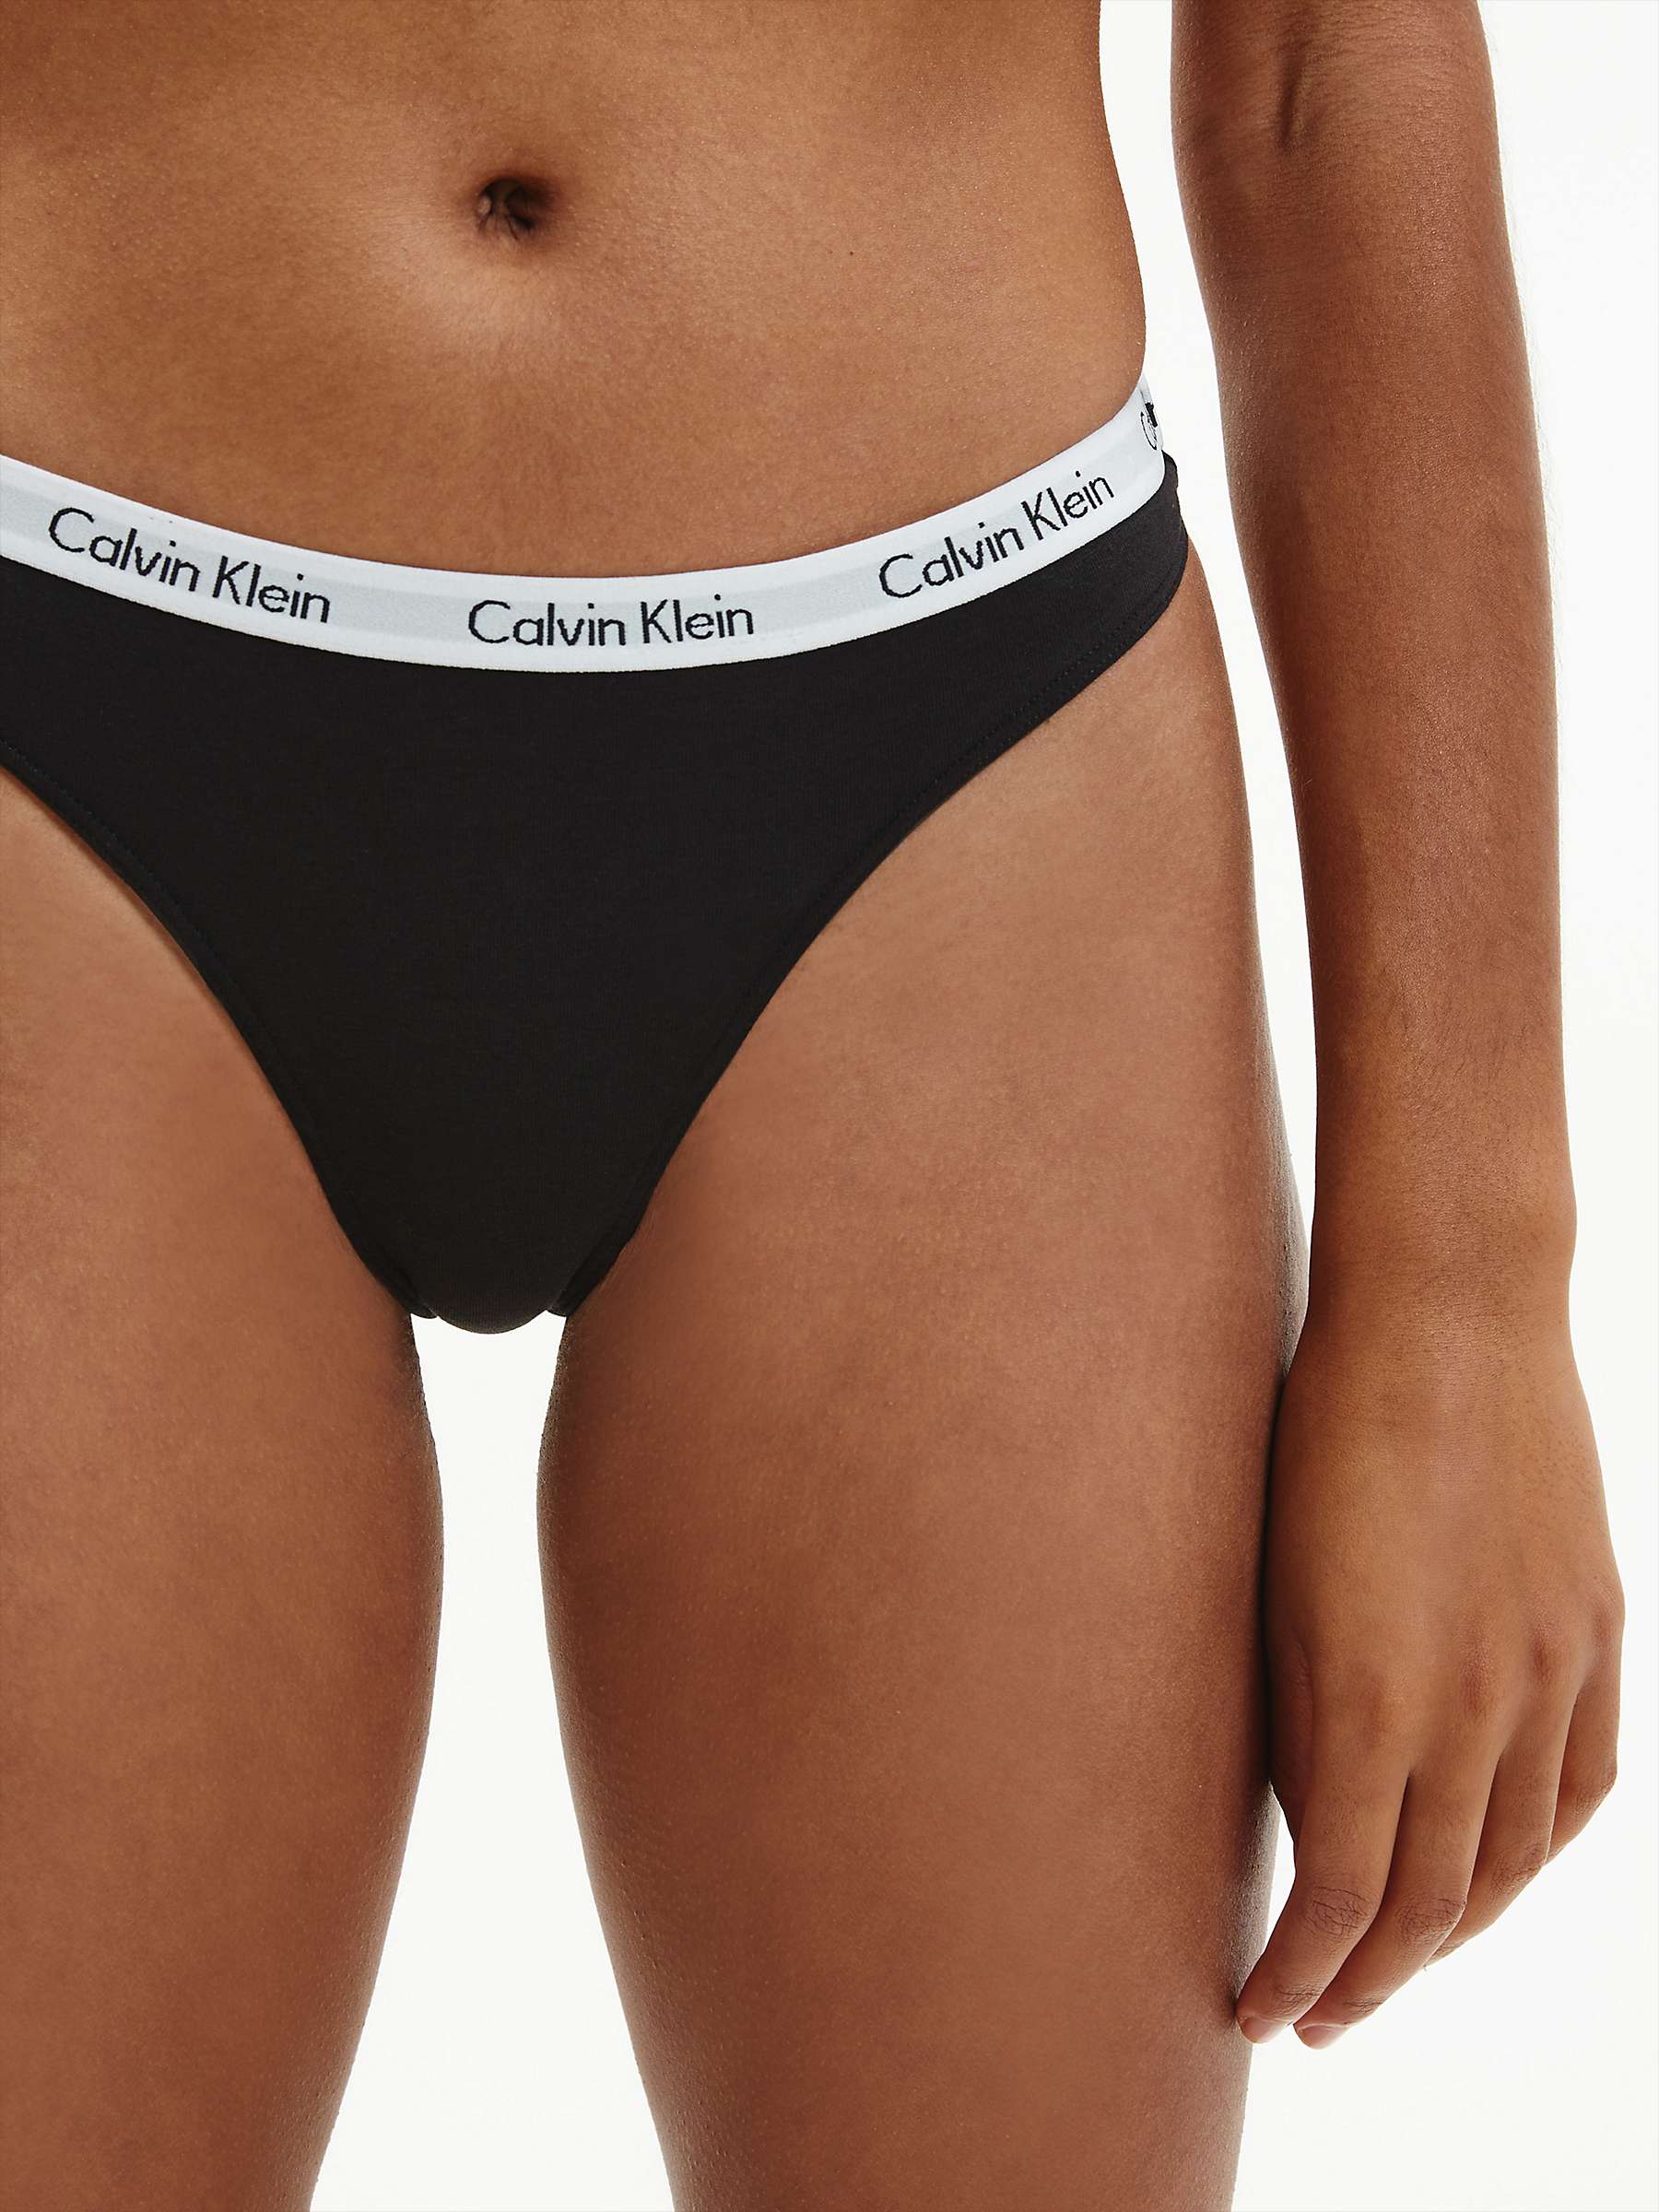 Buy Calvin Klein Carousel Thong Online at johnlewis.com